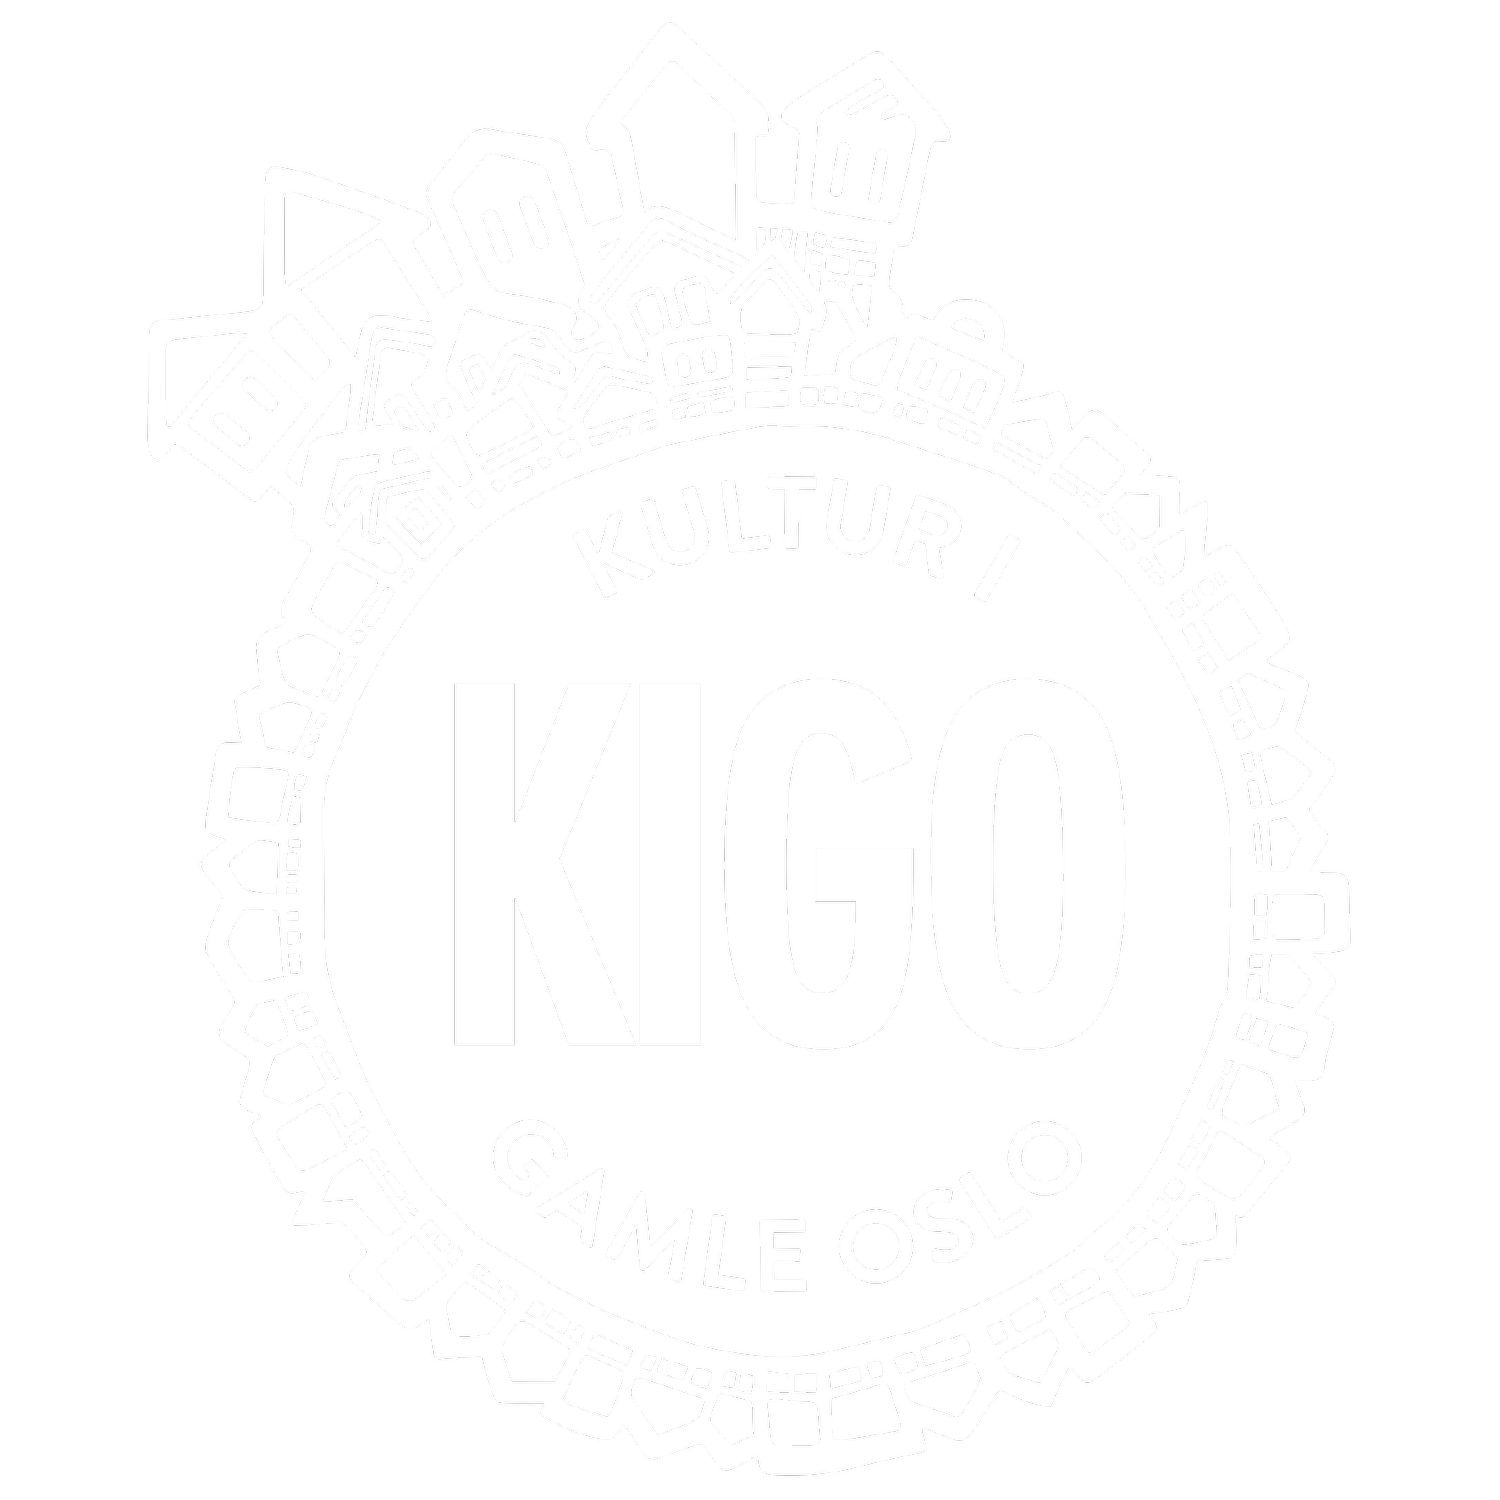 KIGO -  Kultur i Gamle Oslo